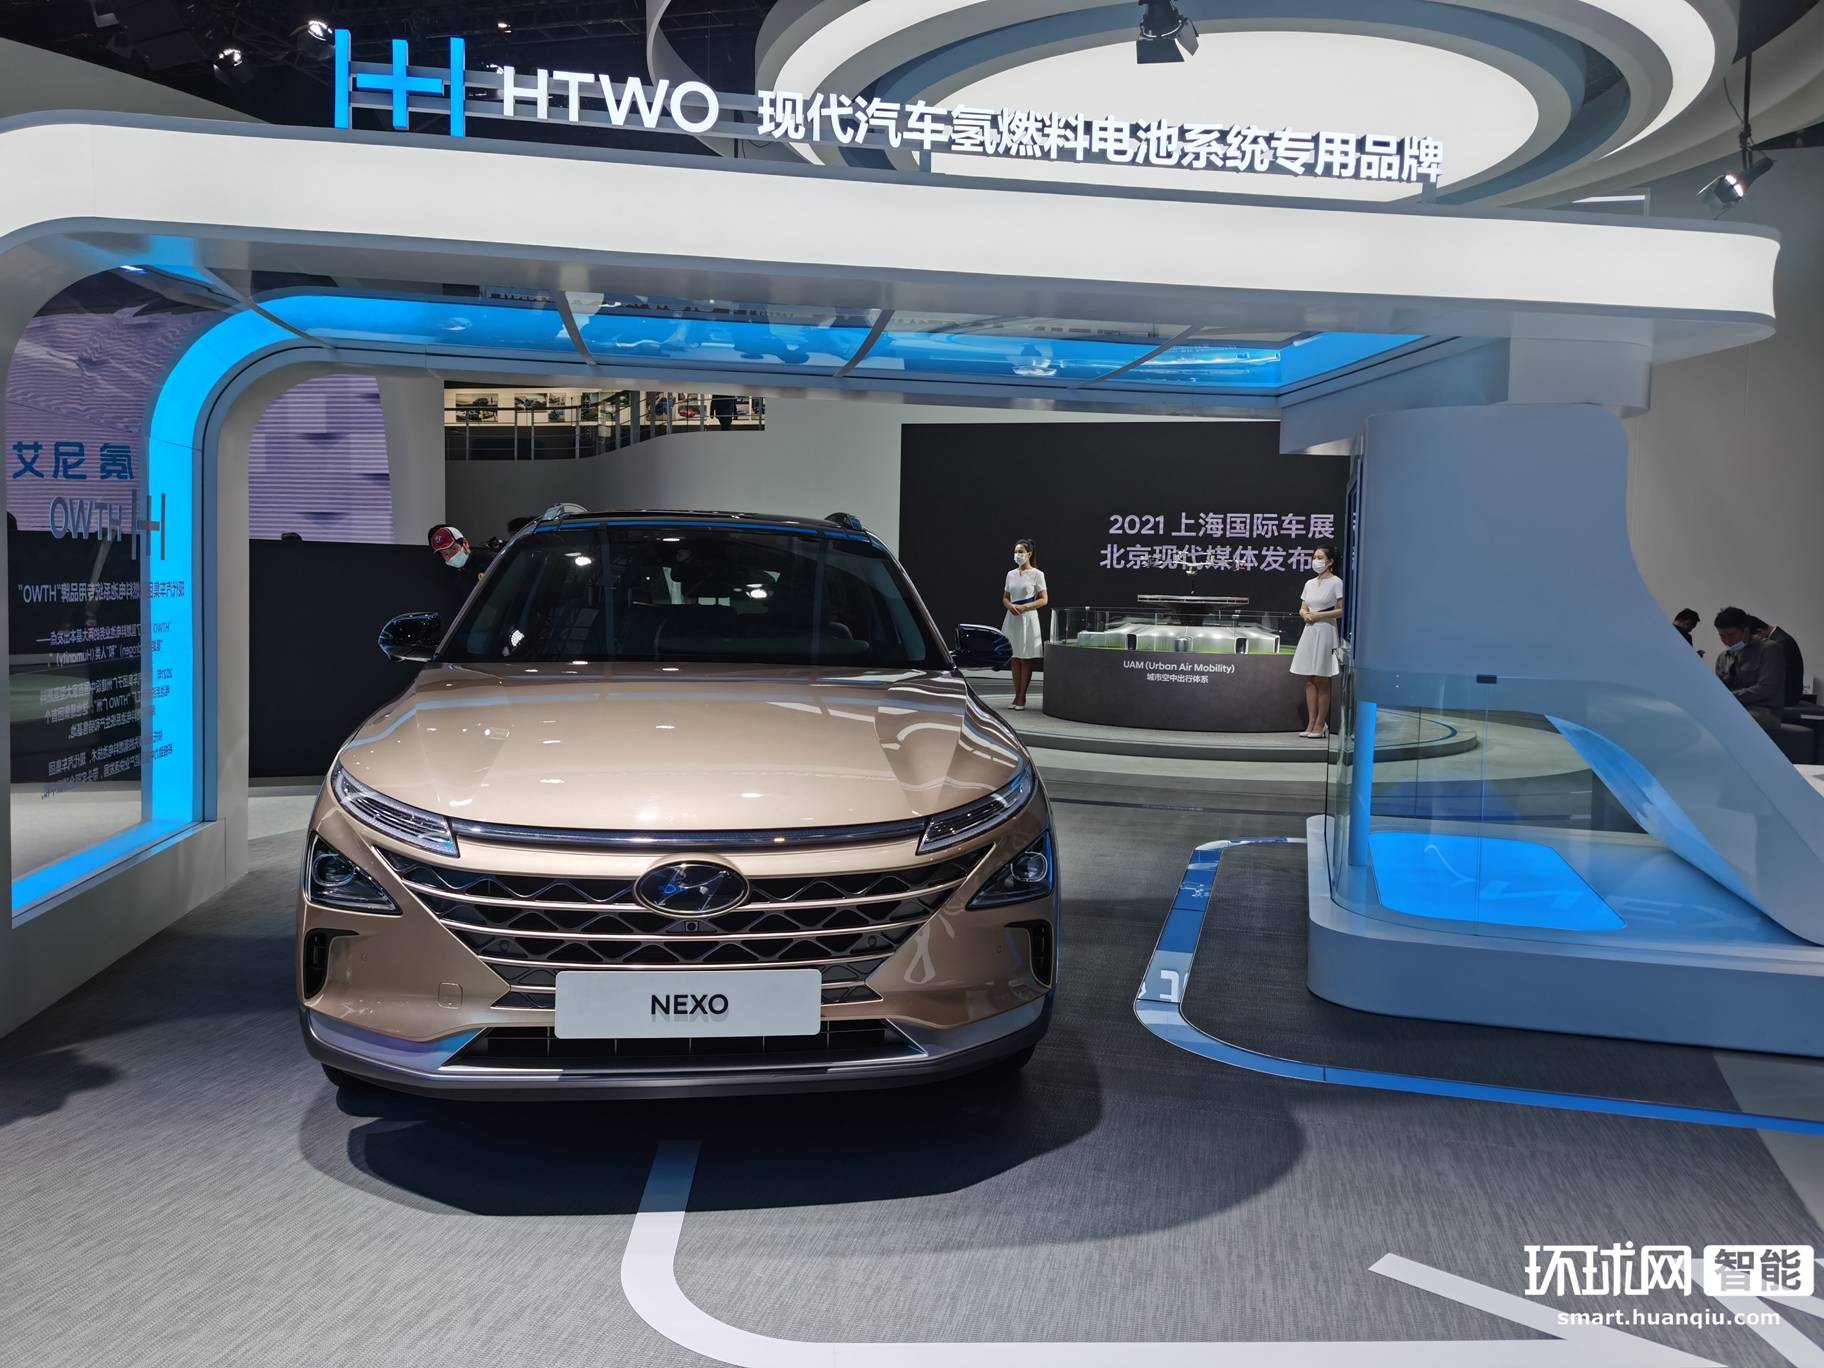 2021上海车展:现代nexo亮相 氢能源动力引关注